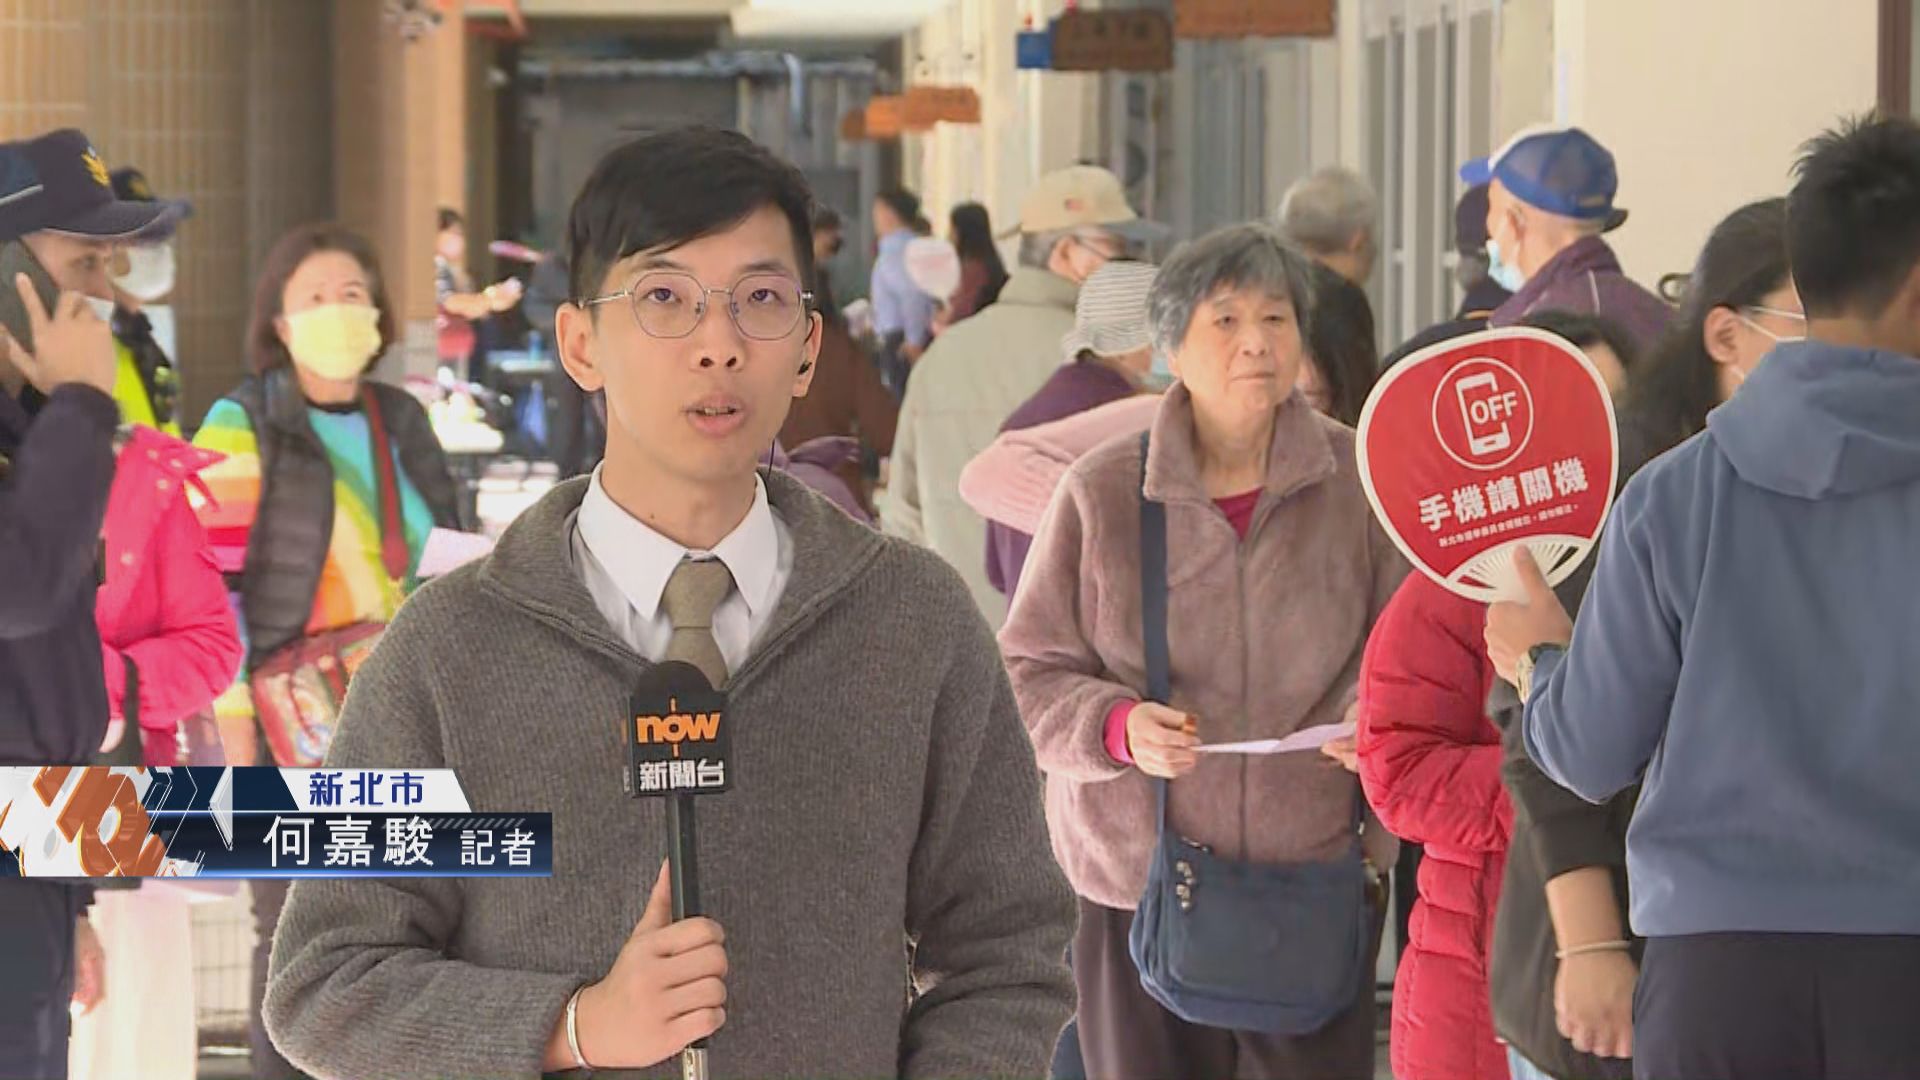 【記者直擊】台灣大選 中午票站人流漸多以年輕人為主